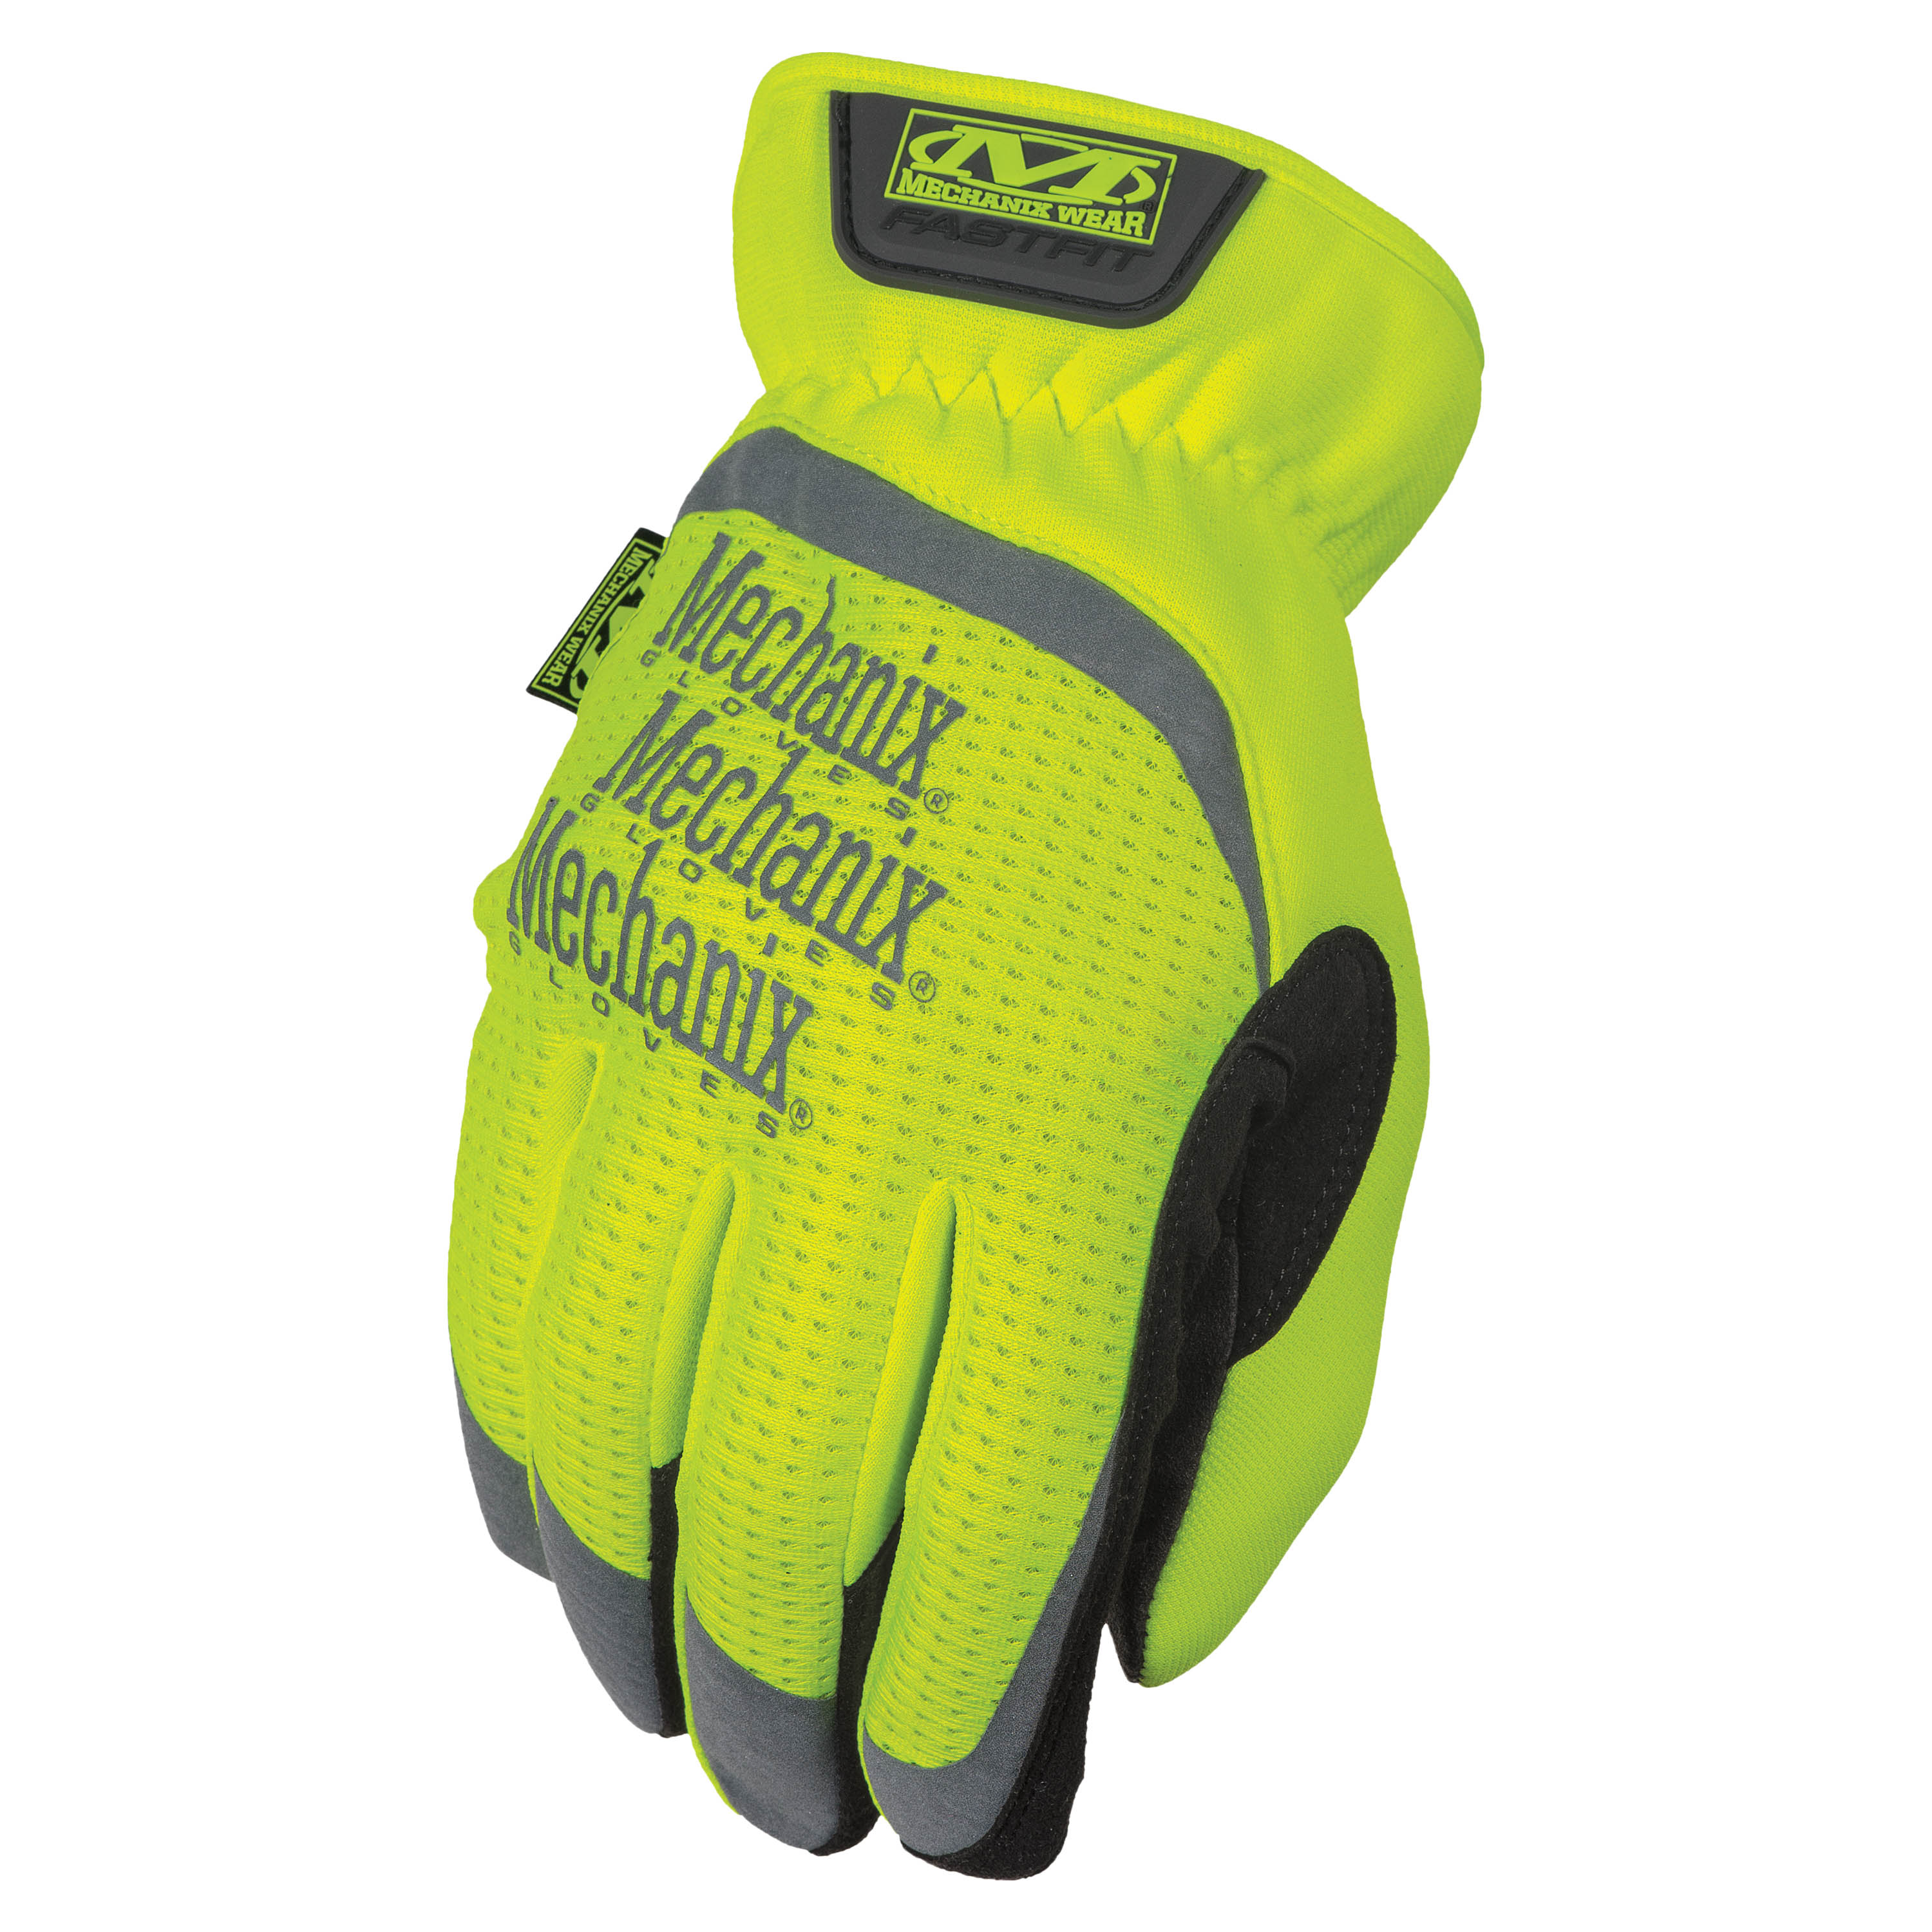 Mechanix Original 0.5mm covert High Dexterity Tactical Glove Einsatz Handschuh